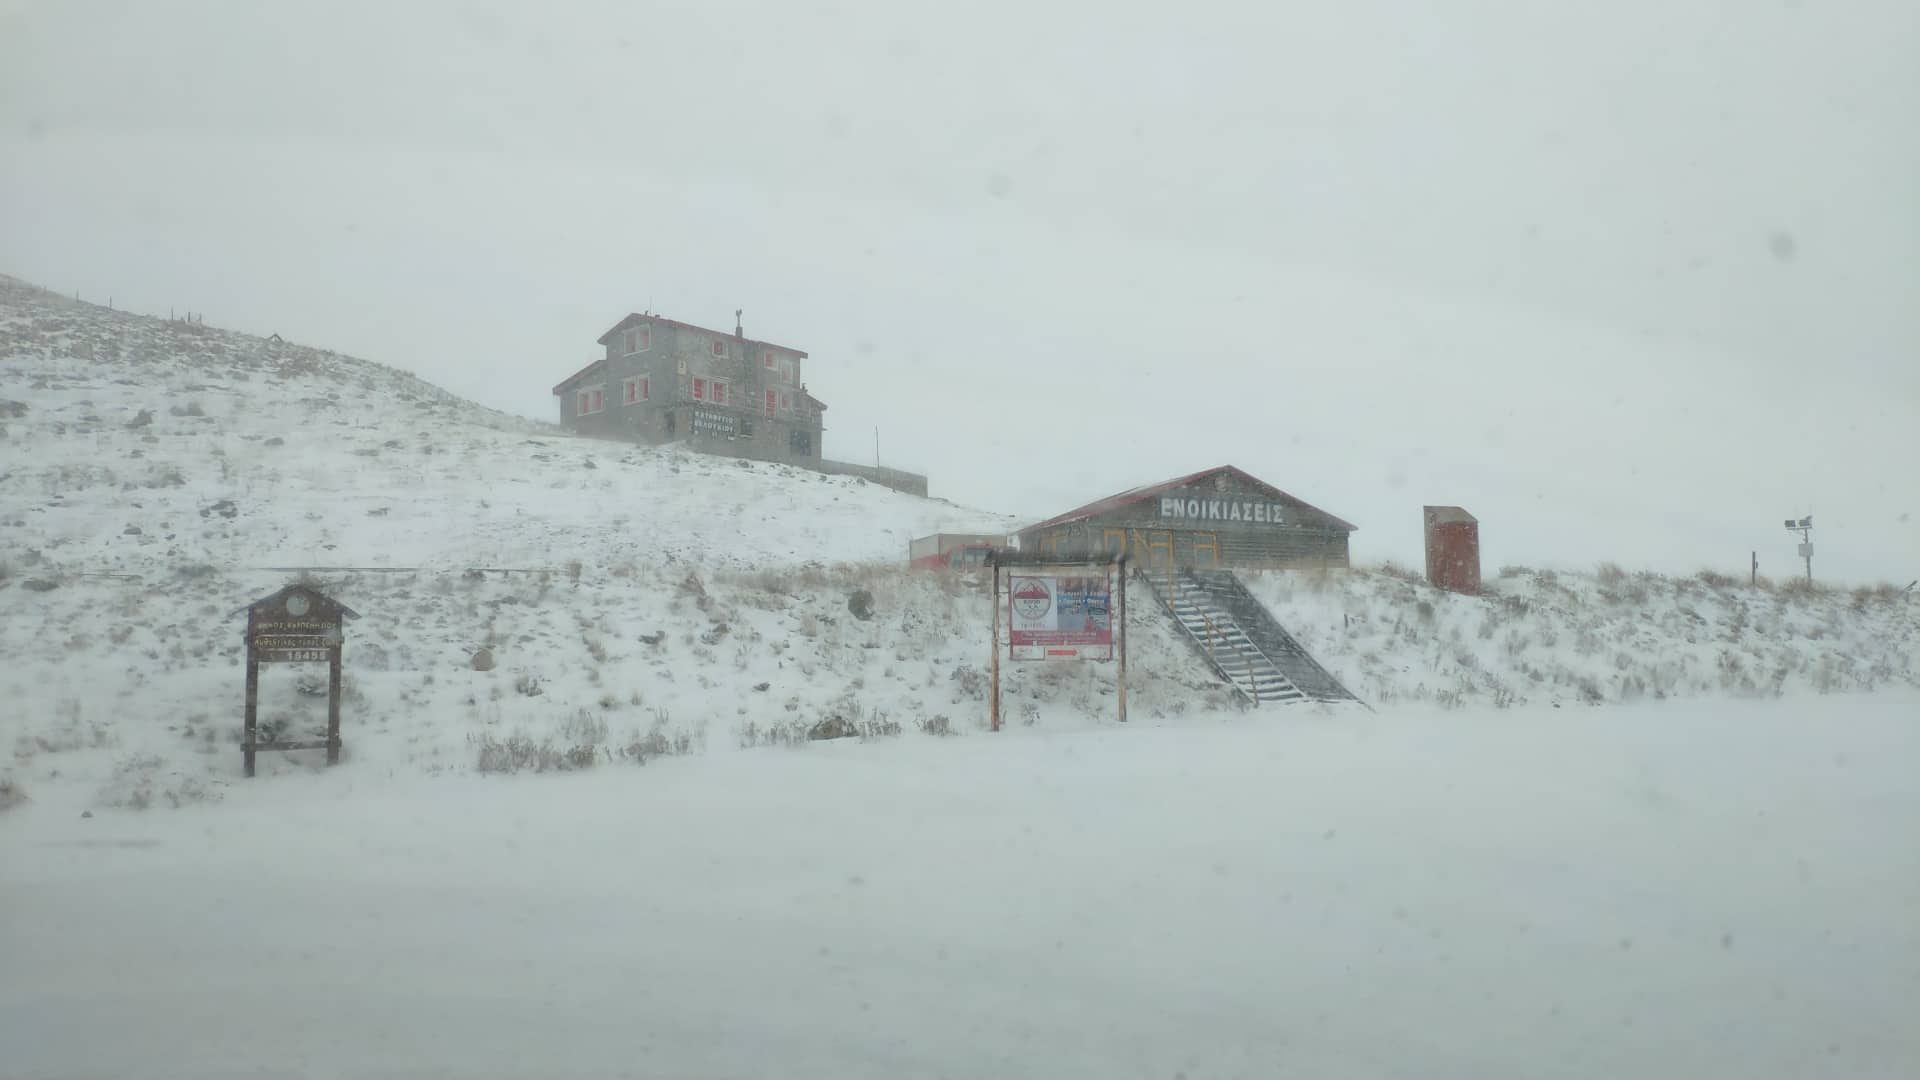 Πρώτα χιόνια στο Χιονοδρομικό Κέντρο Βελουχίου 16.11.2018